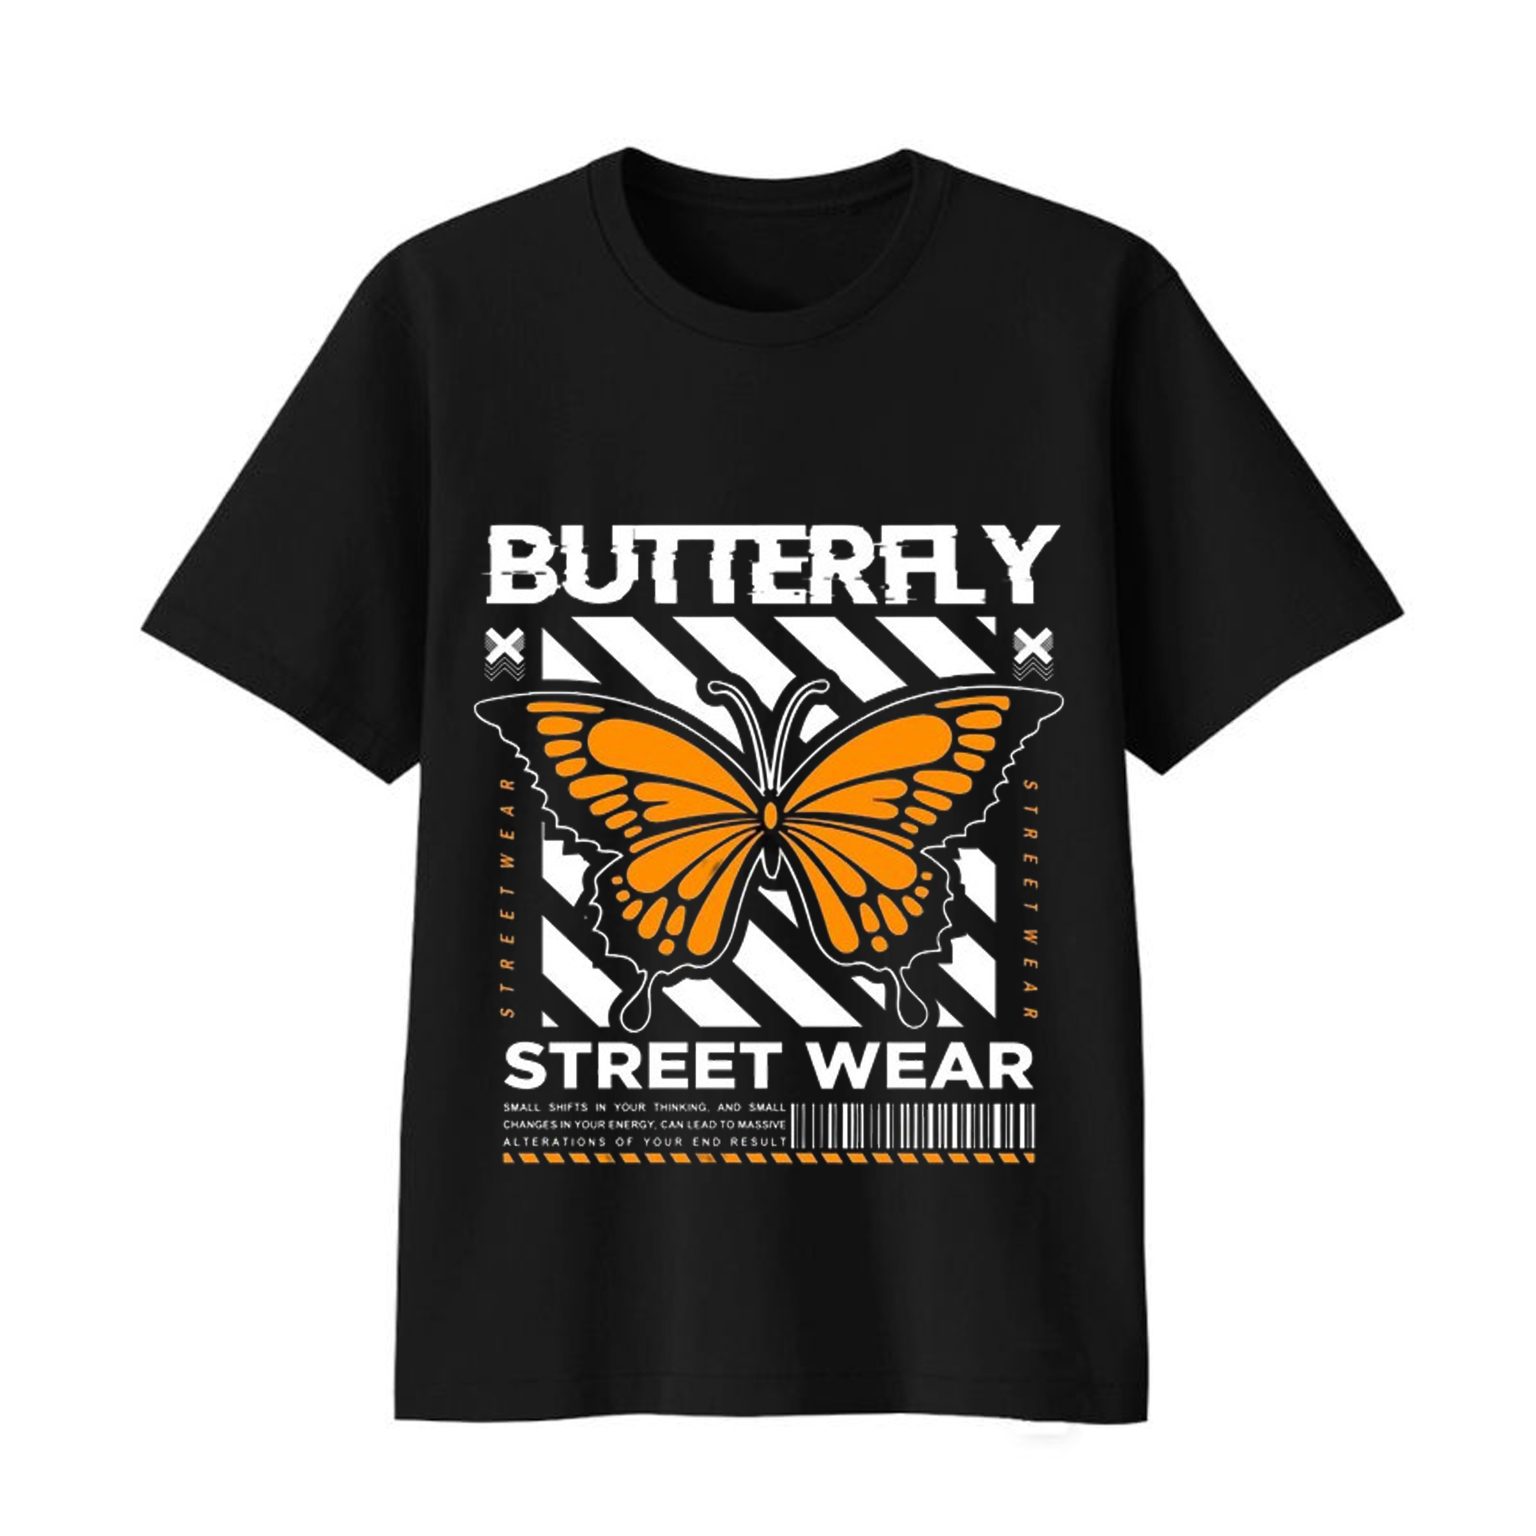 Butteraly street war T-Shirt